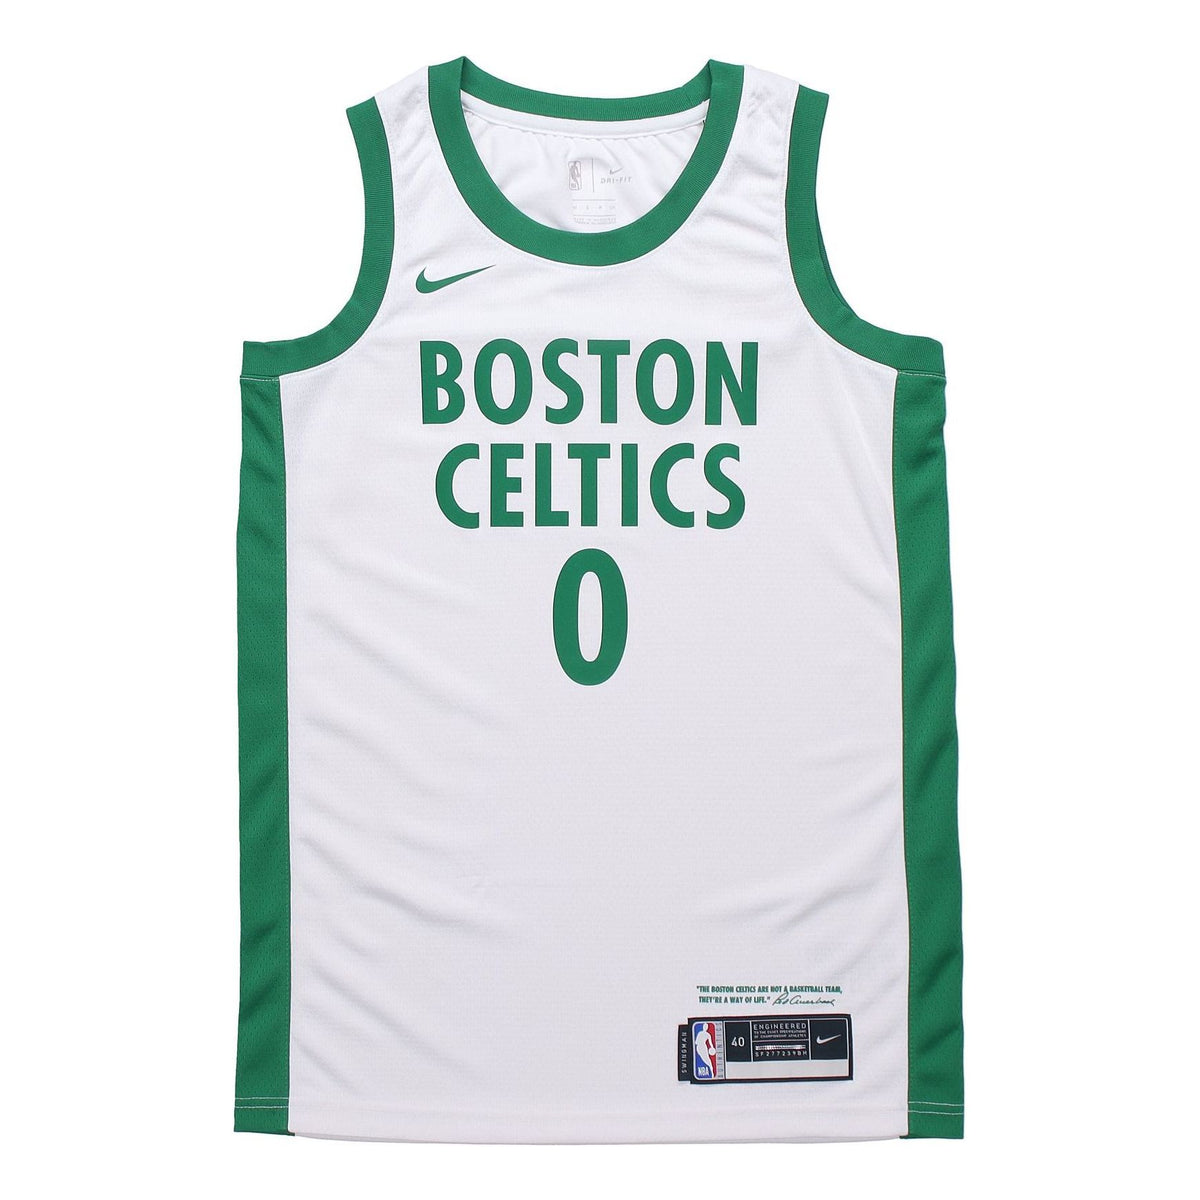 NBA Boston Celtics Black Jersey,NBA Store Boston Celtics Jersey,Men NBA 93  BAPE Chicago Bulls Los Angeles Lakers Boston Celtics